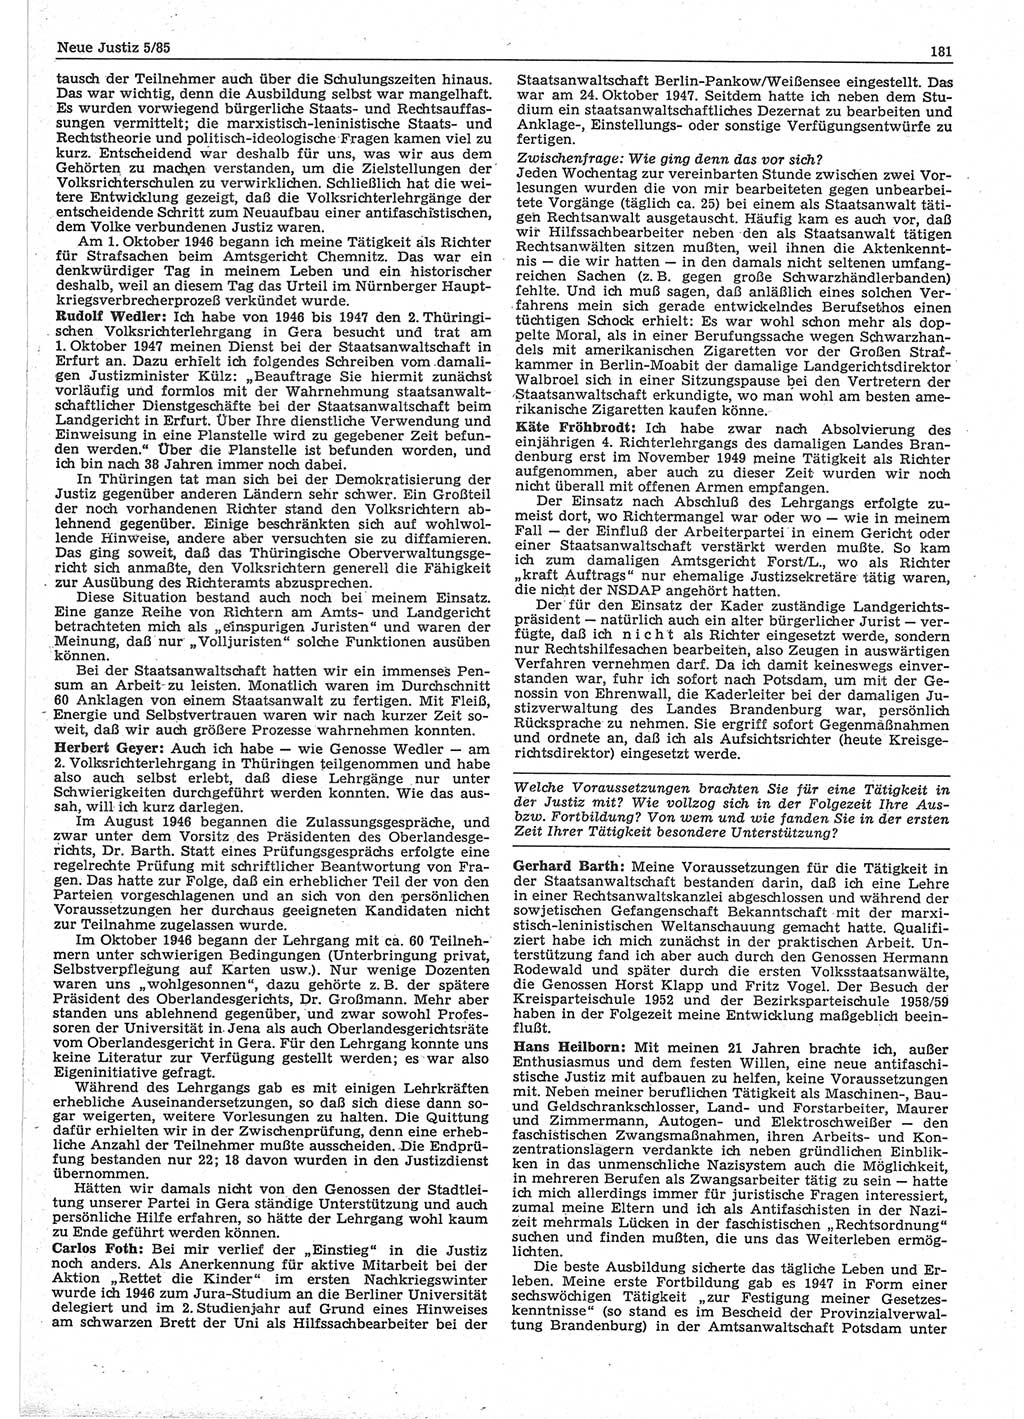 Neue Justiz (NJ), Zeitschrift für sozialistisches Recht und Gesetzlichkeit [Deutsche Demokratische Republik (DDR)], 39. Jahrgang 1985, Seite 181 (NJ DDR 1985, S. 181)